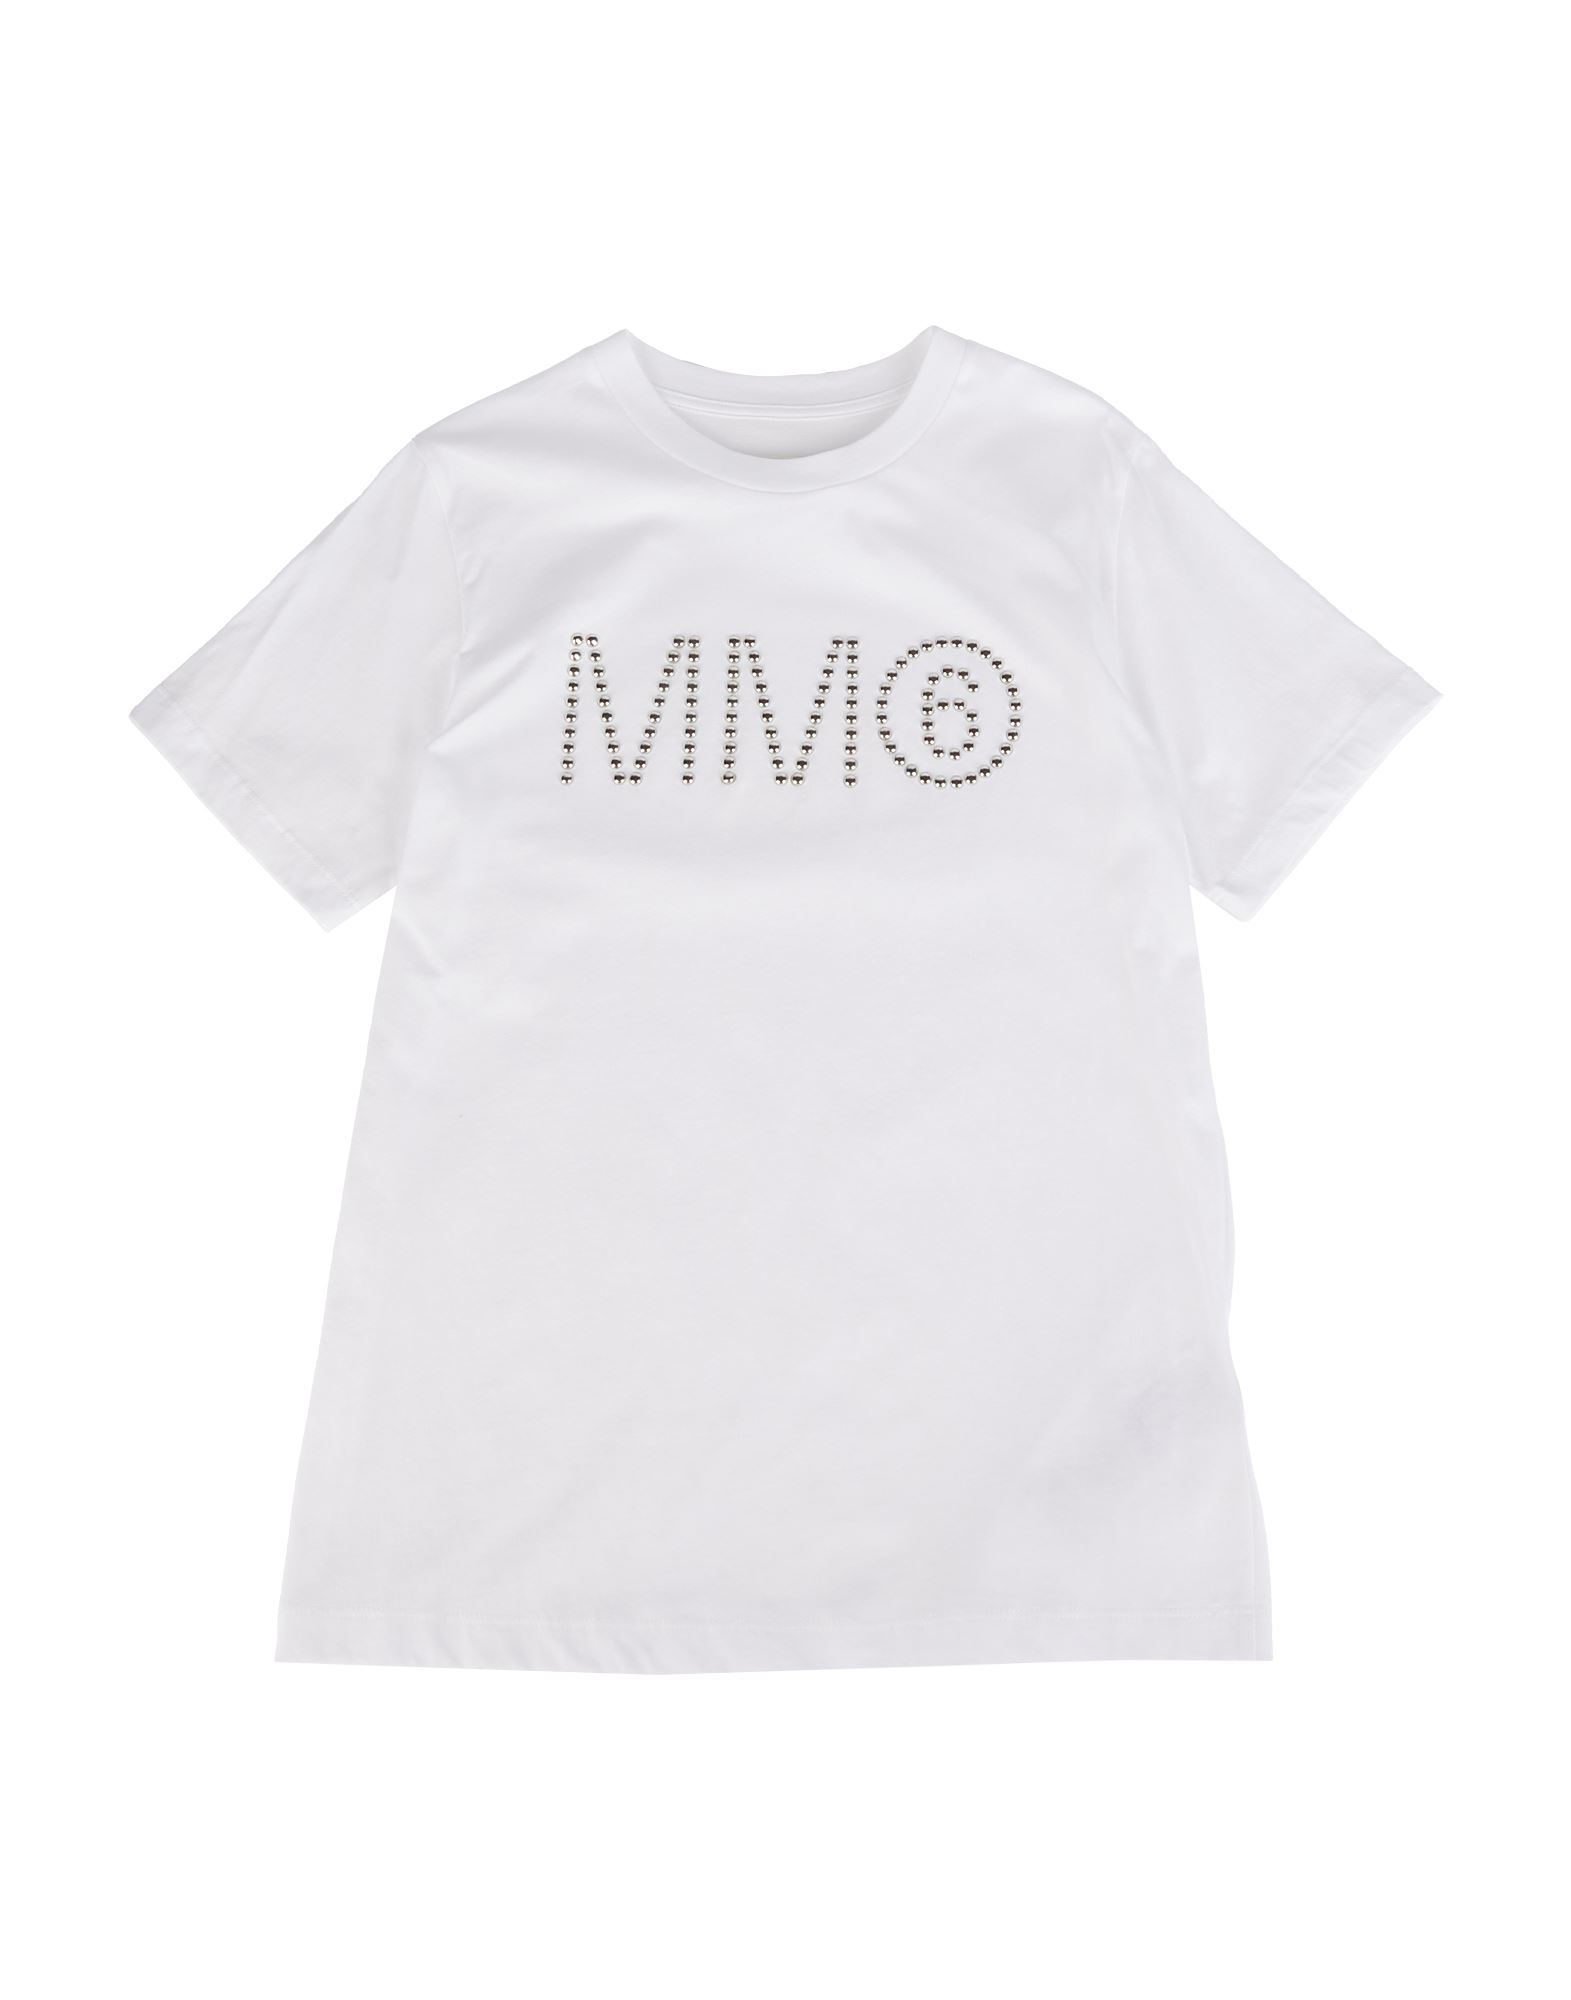 MM6 MAISON MARGIELA T-shirts Kinder Weiß von MM6 MAISON MARGIELA